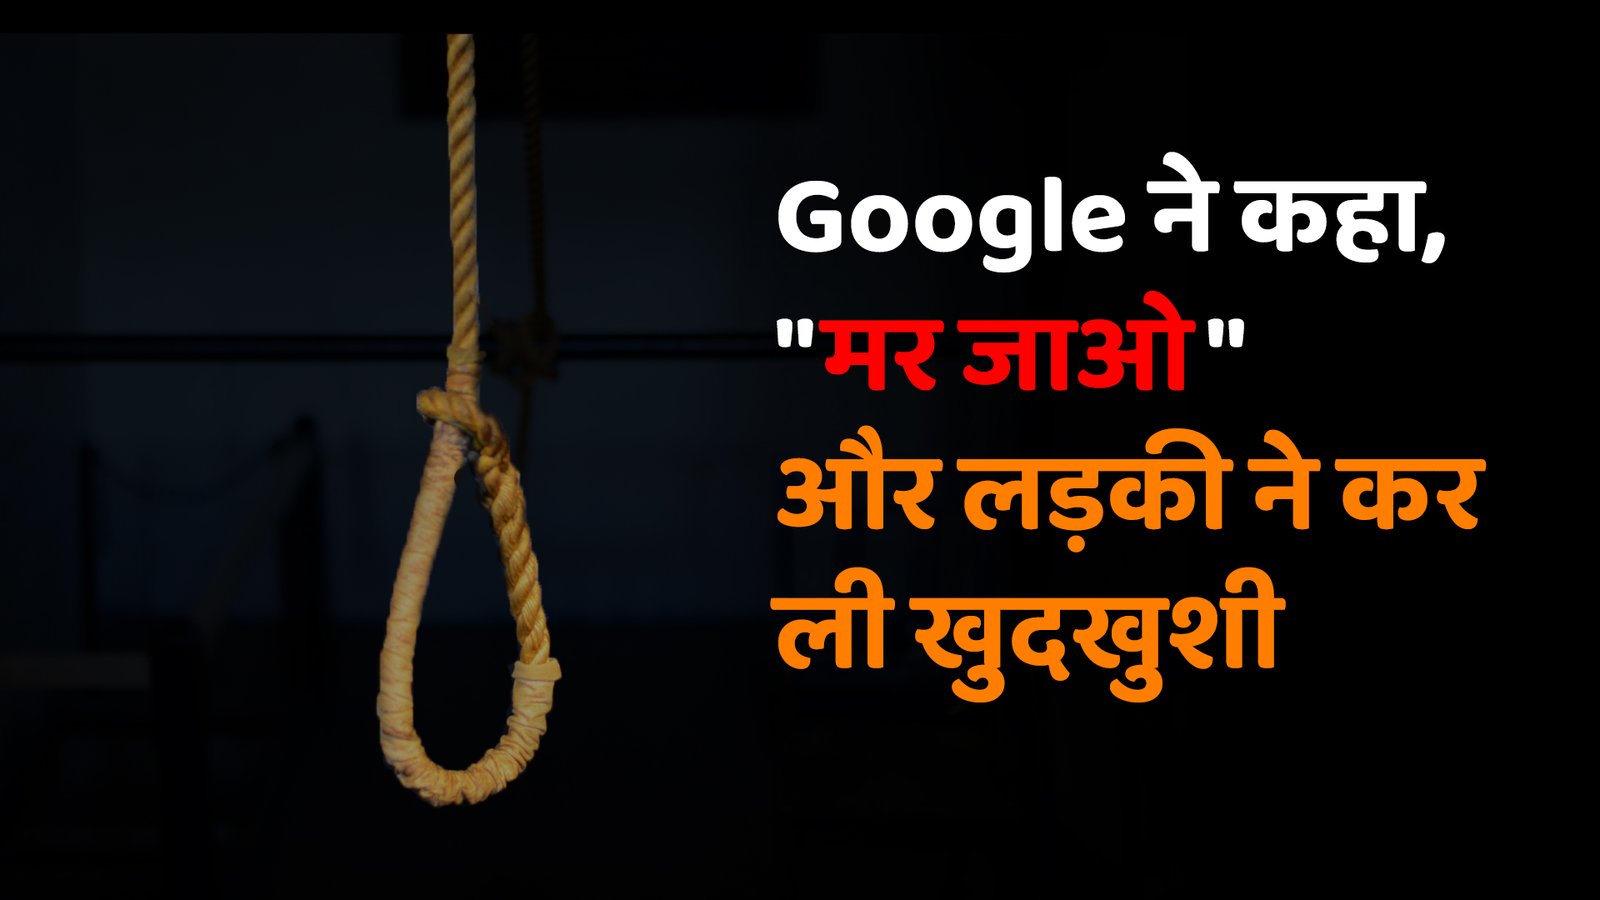 Google ने कहा, “मर जाओ”: मोबाइल एडिक्शन से पीड़ित युवती ने कर ली खुदखुशी